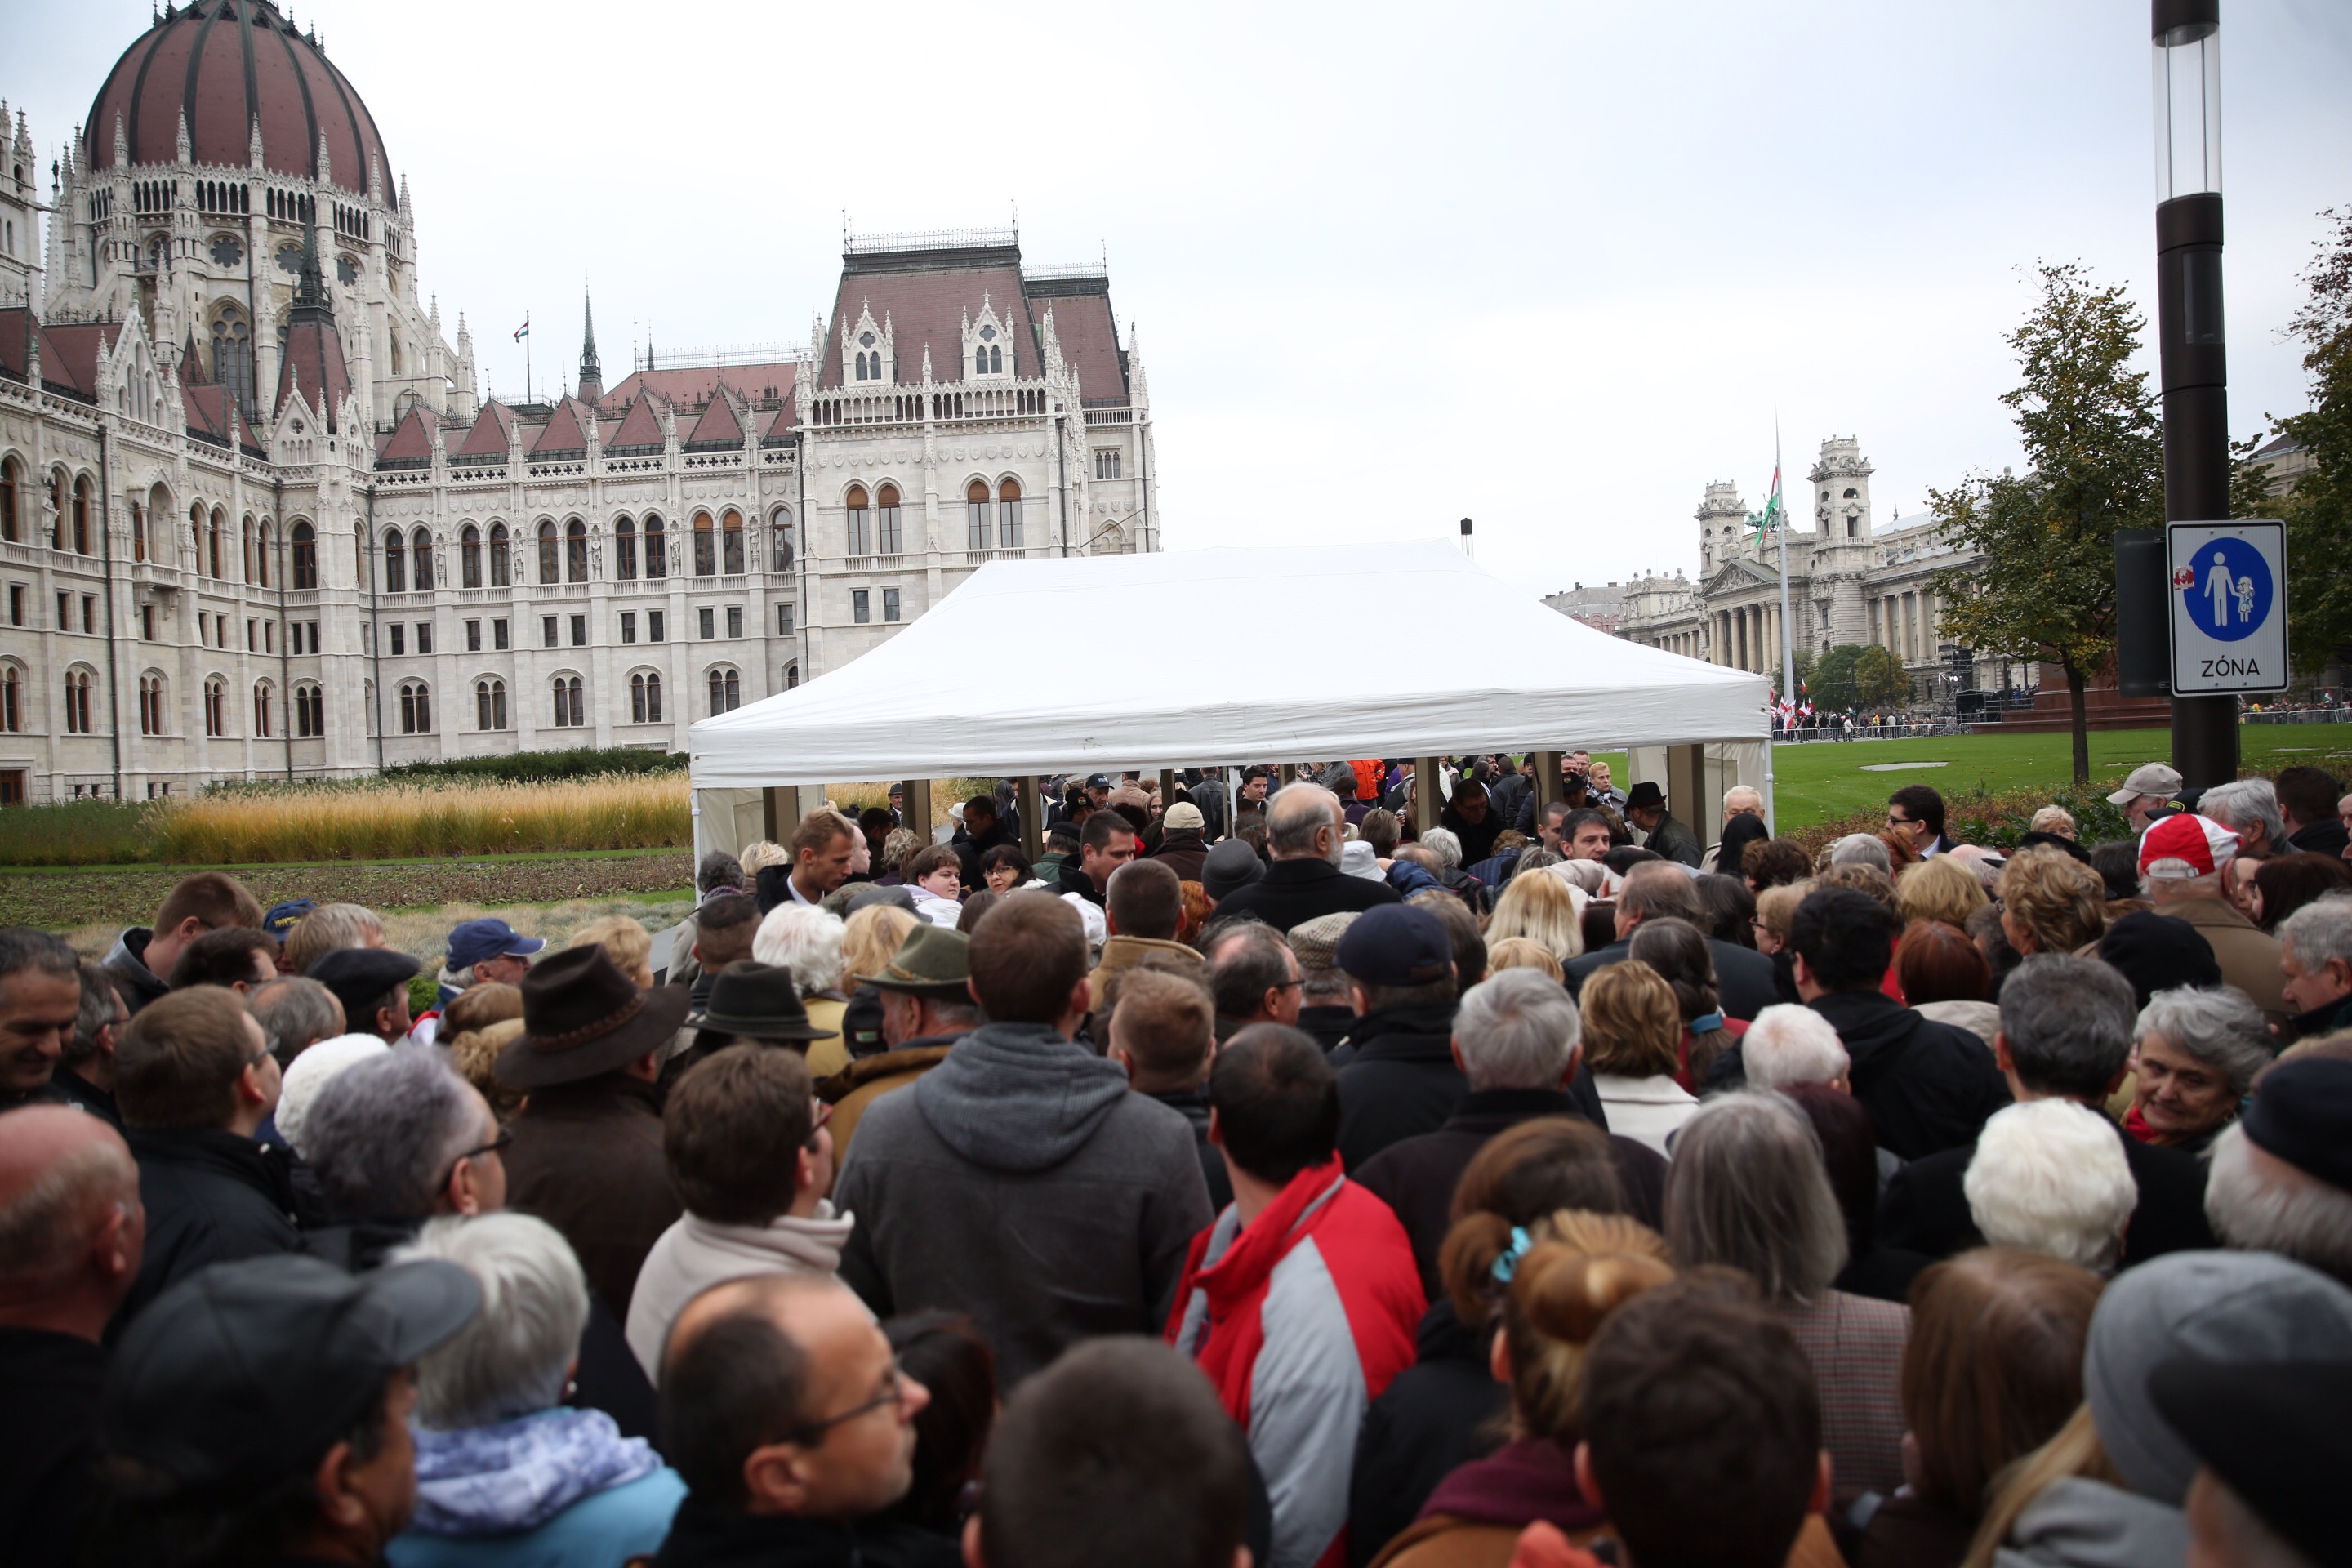 Körbekordonozták a Kossuth teret, komoly beléptetés előzi meg Orbán Viktor beszédét